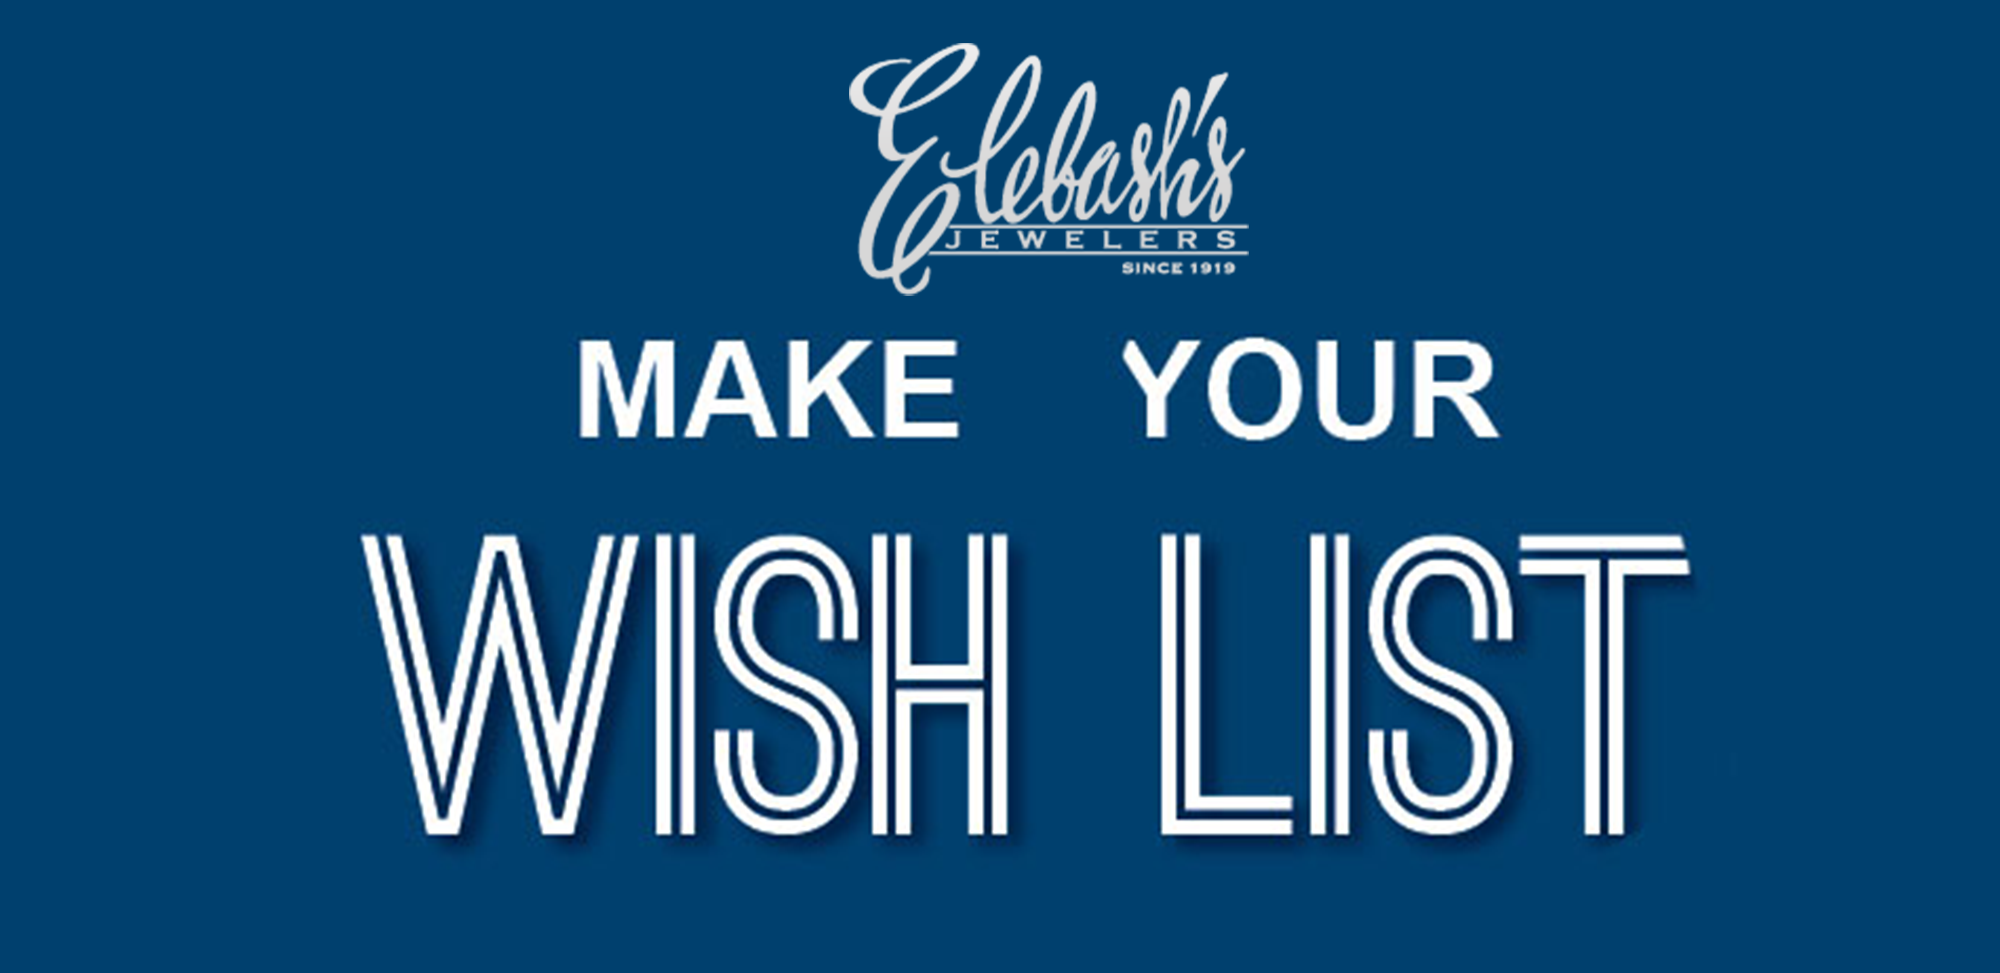 Elebash’s Wish List